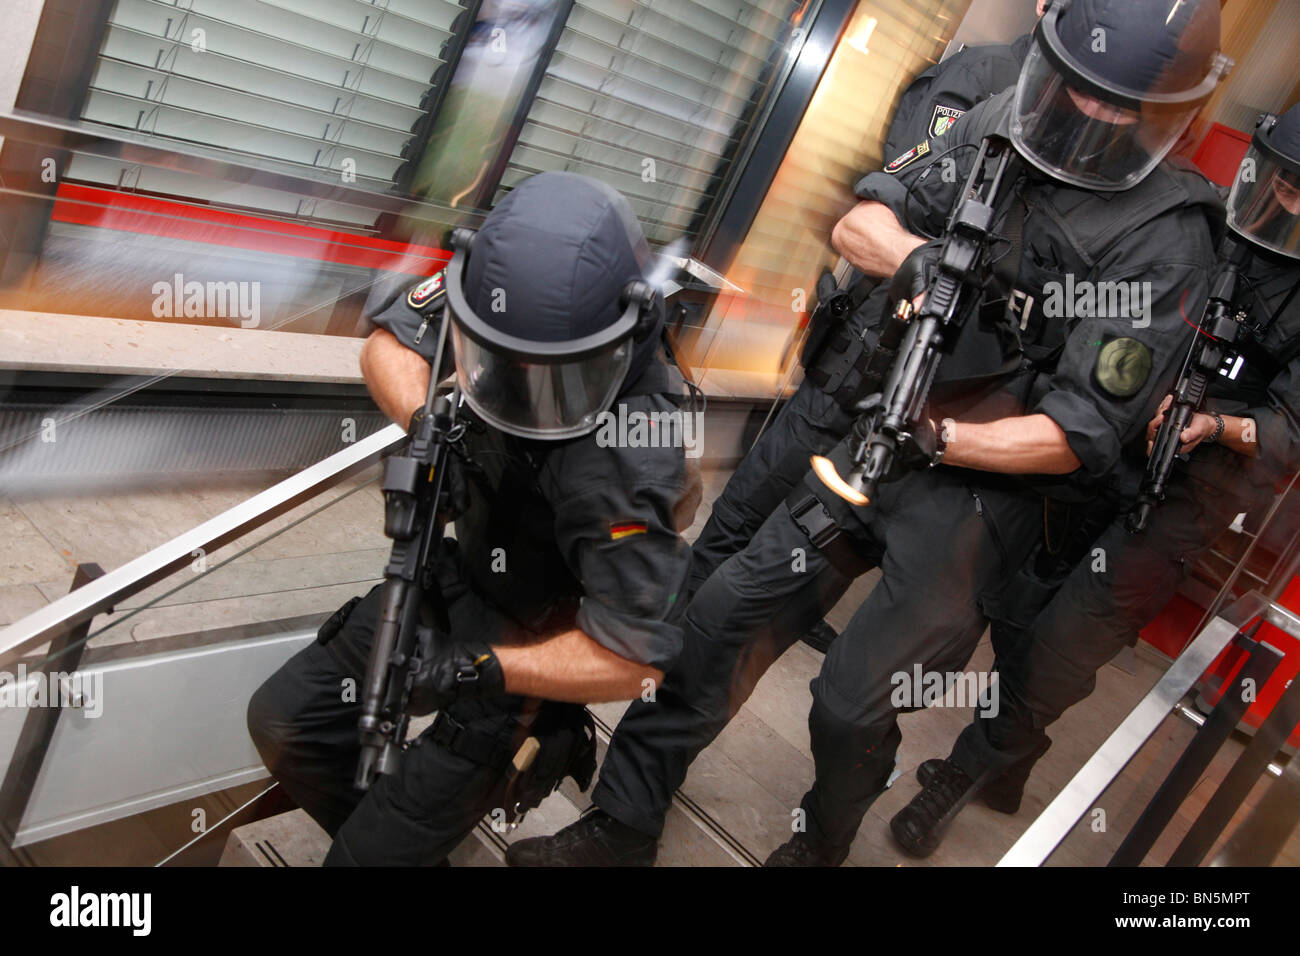 La polizia SWAT team a un esercizio. Lotta contro il terrorismo e la criminalità, unità di forze speciali di polizia hanno. Foto Stock